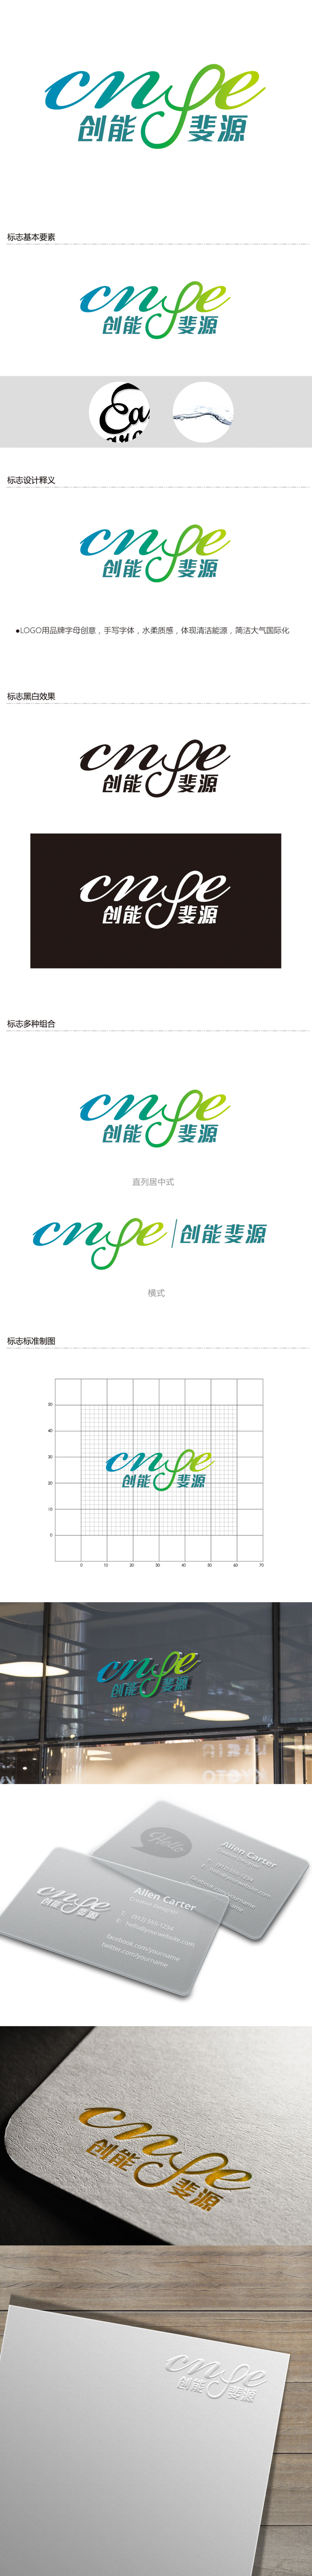 黄安悦的中文：创能斐源；英文：cnφe energy或者cnphie energylogo设计